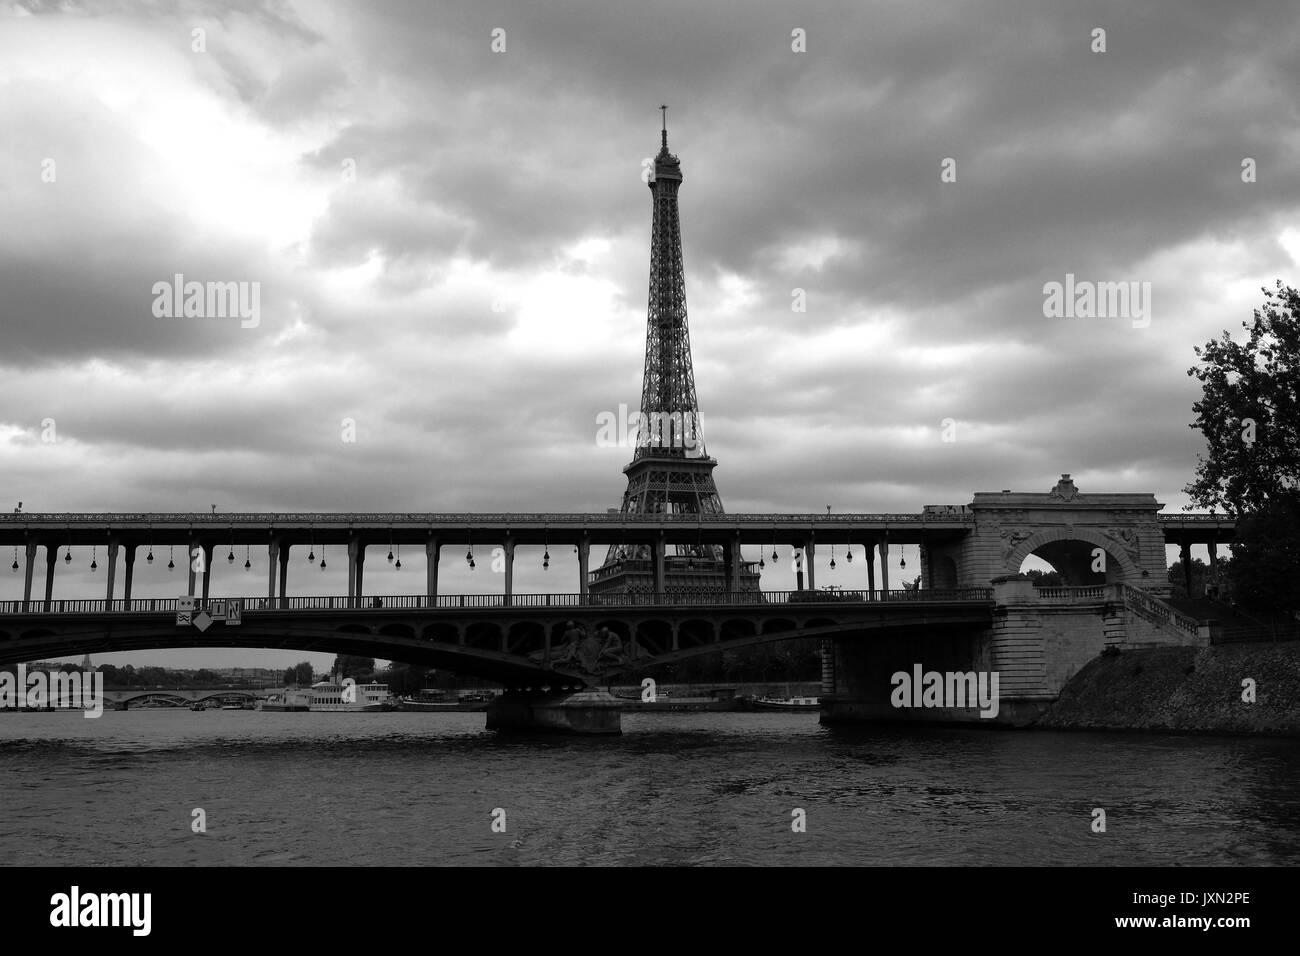 La Torre Eiffel di Parigi come si vede dal fiume Senna durante una gita in barca fotografata in bianco e nero Foto Stock